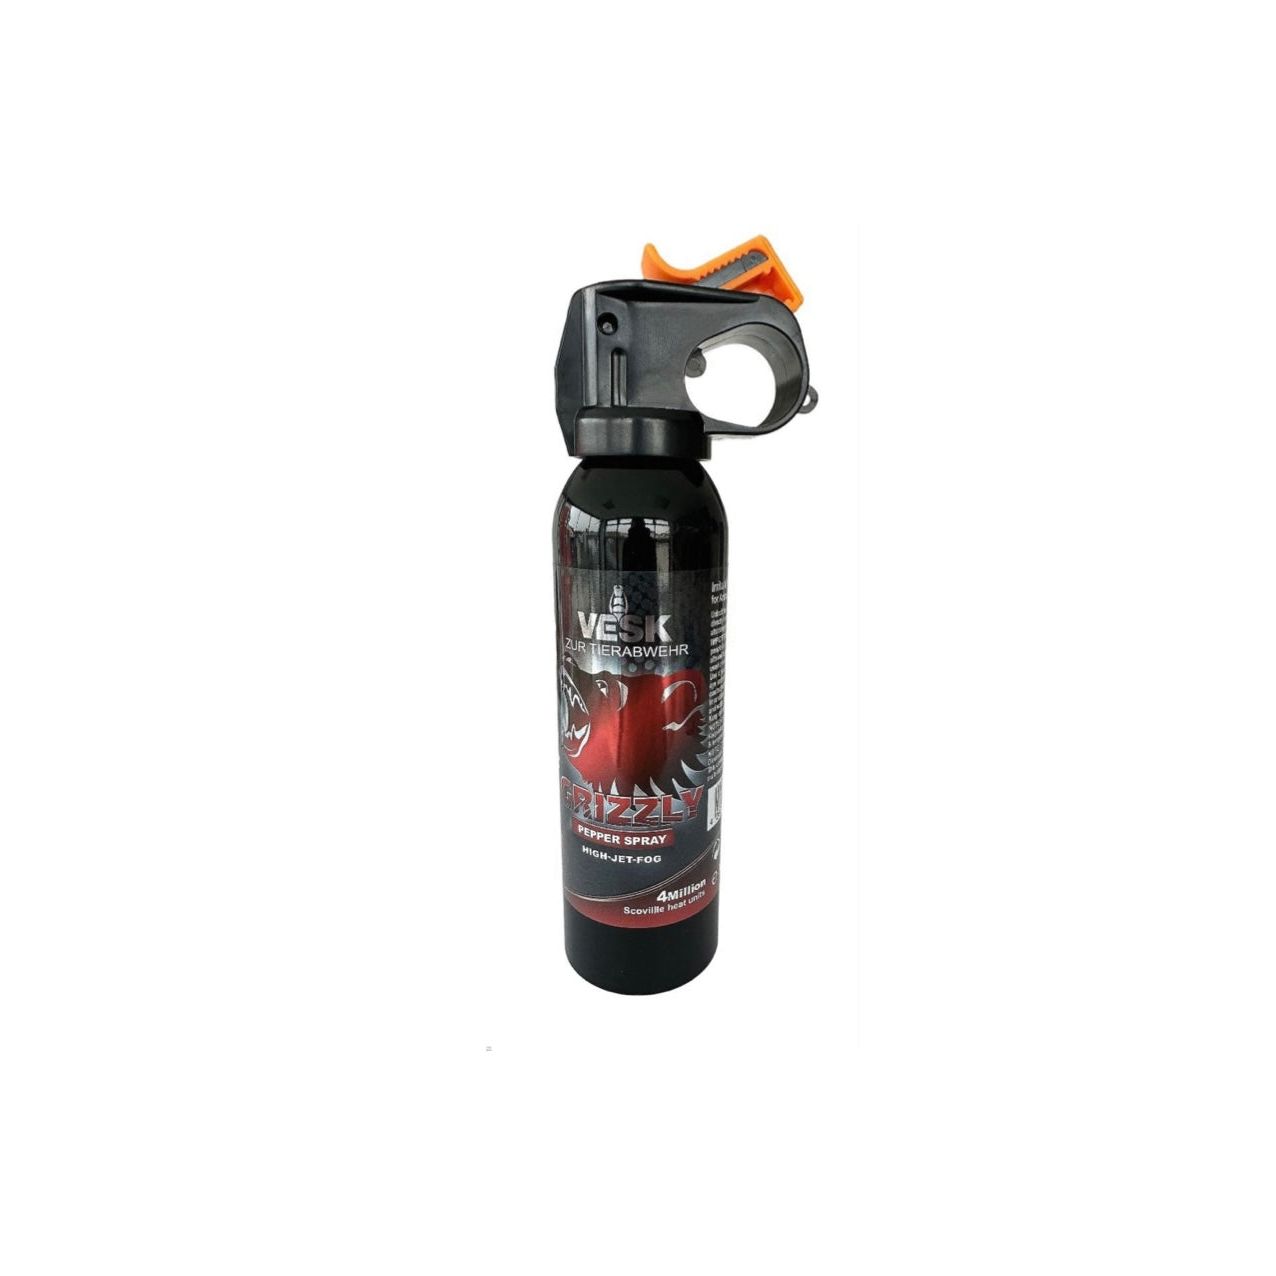 Gel spray au poivre TW 1000 TITAN 750 ml – CEST Group GmbH